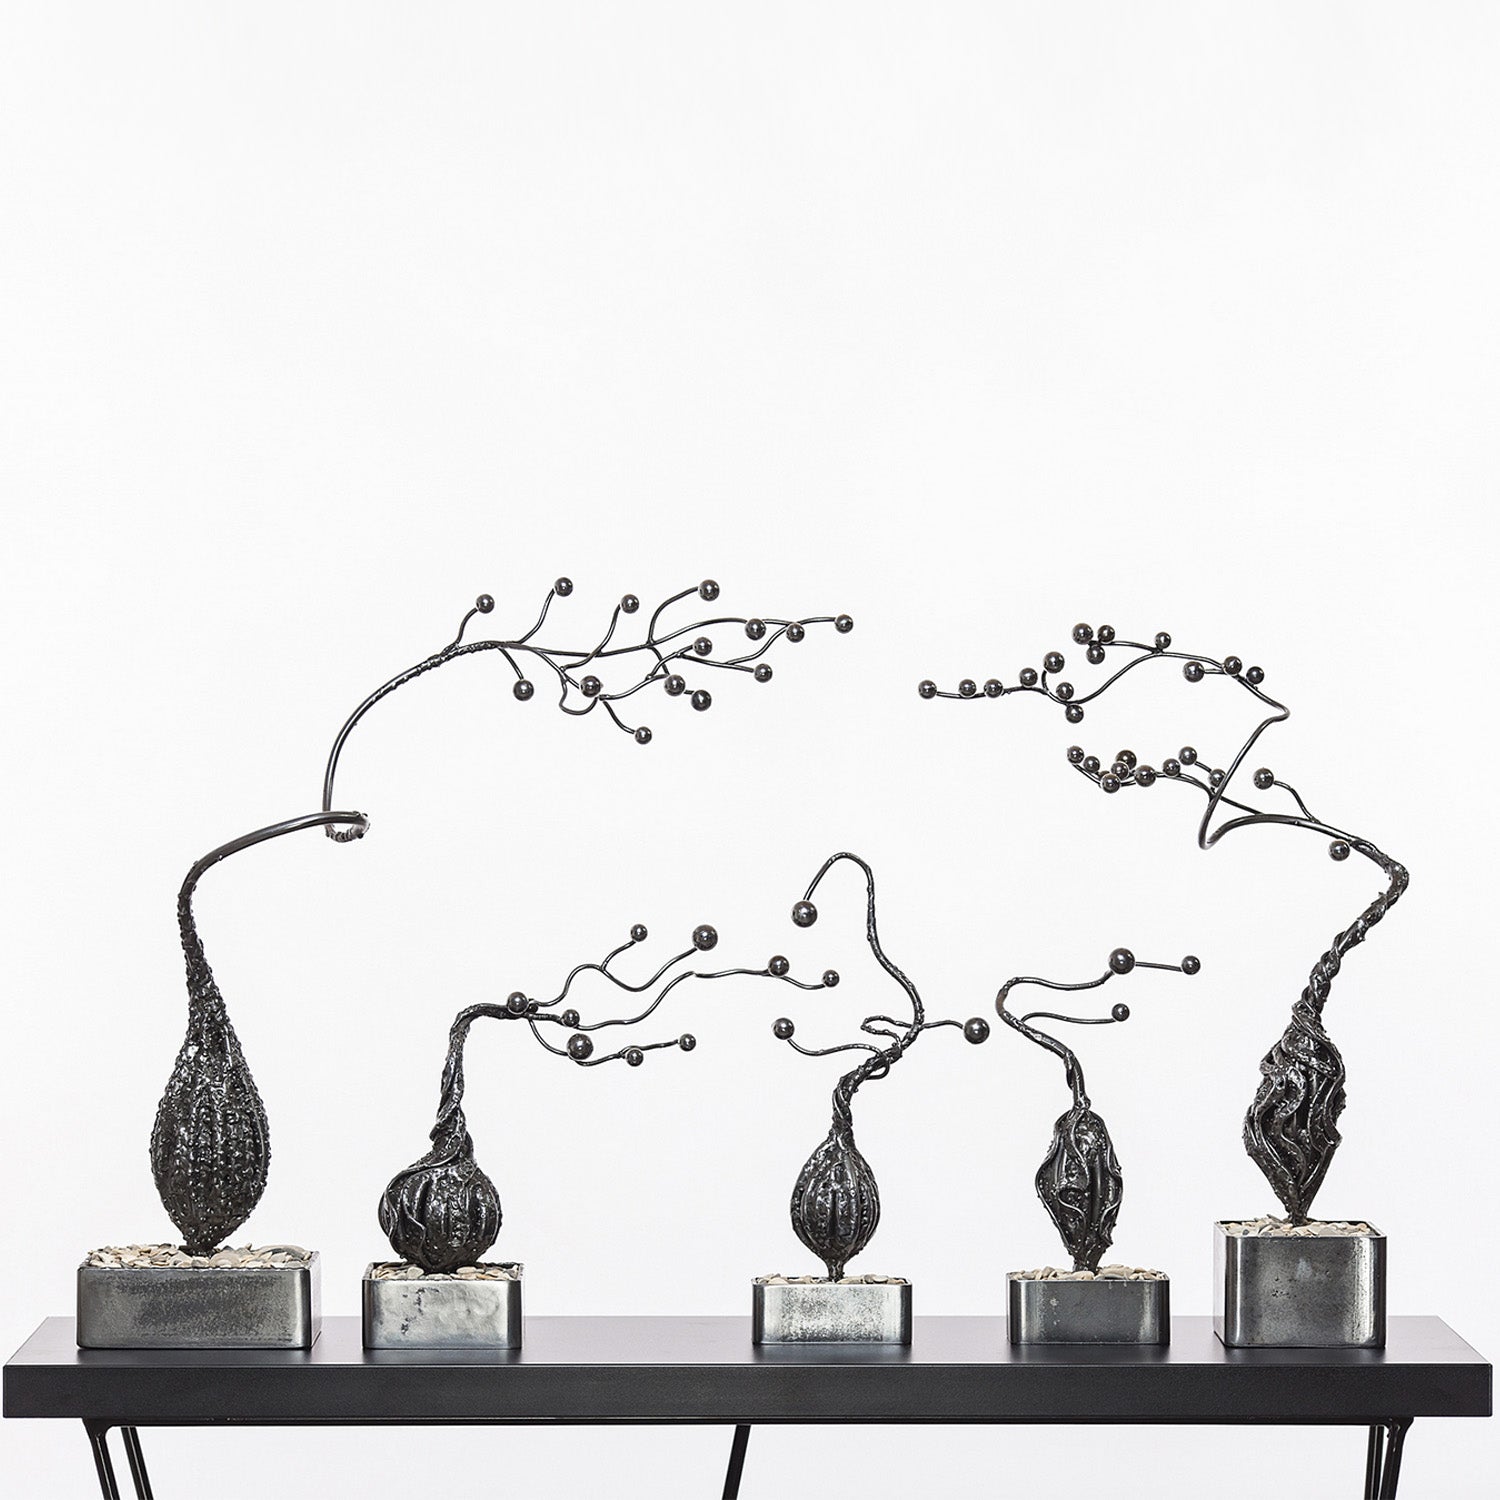 Sculpture Series «Bonsai» - RedDot.art